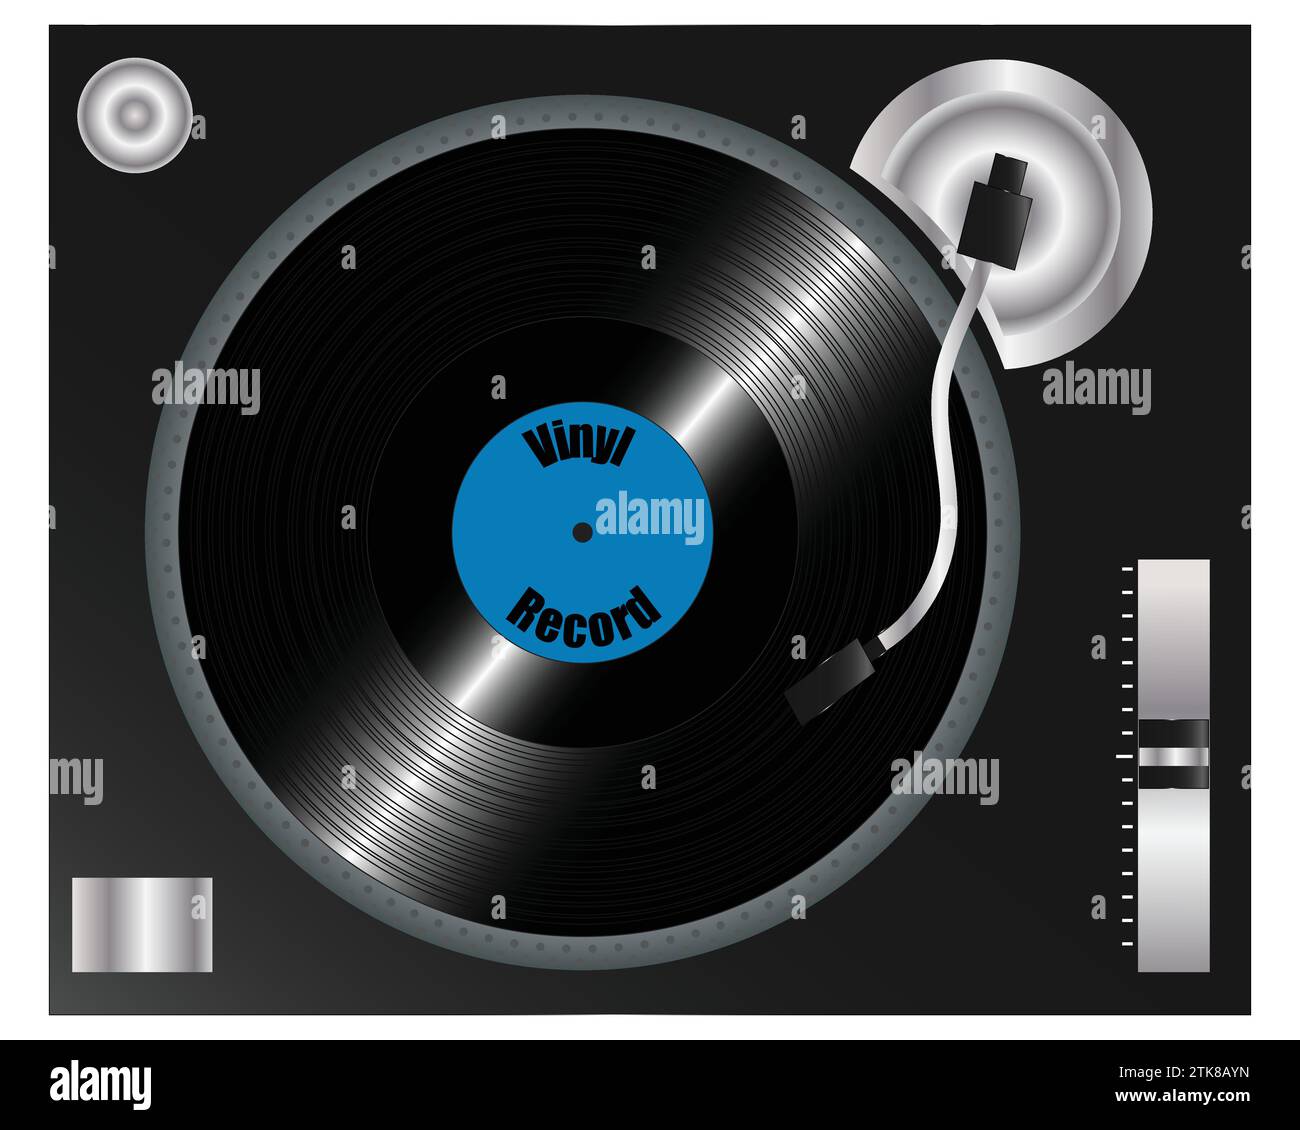 Realista Retro DJ Turntable con una grabación de vinilo de 12" en el plato, Vista superior aislada en blanco, concepto para entretenimiento musical Ilustración del Vector